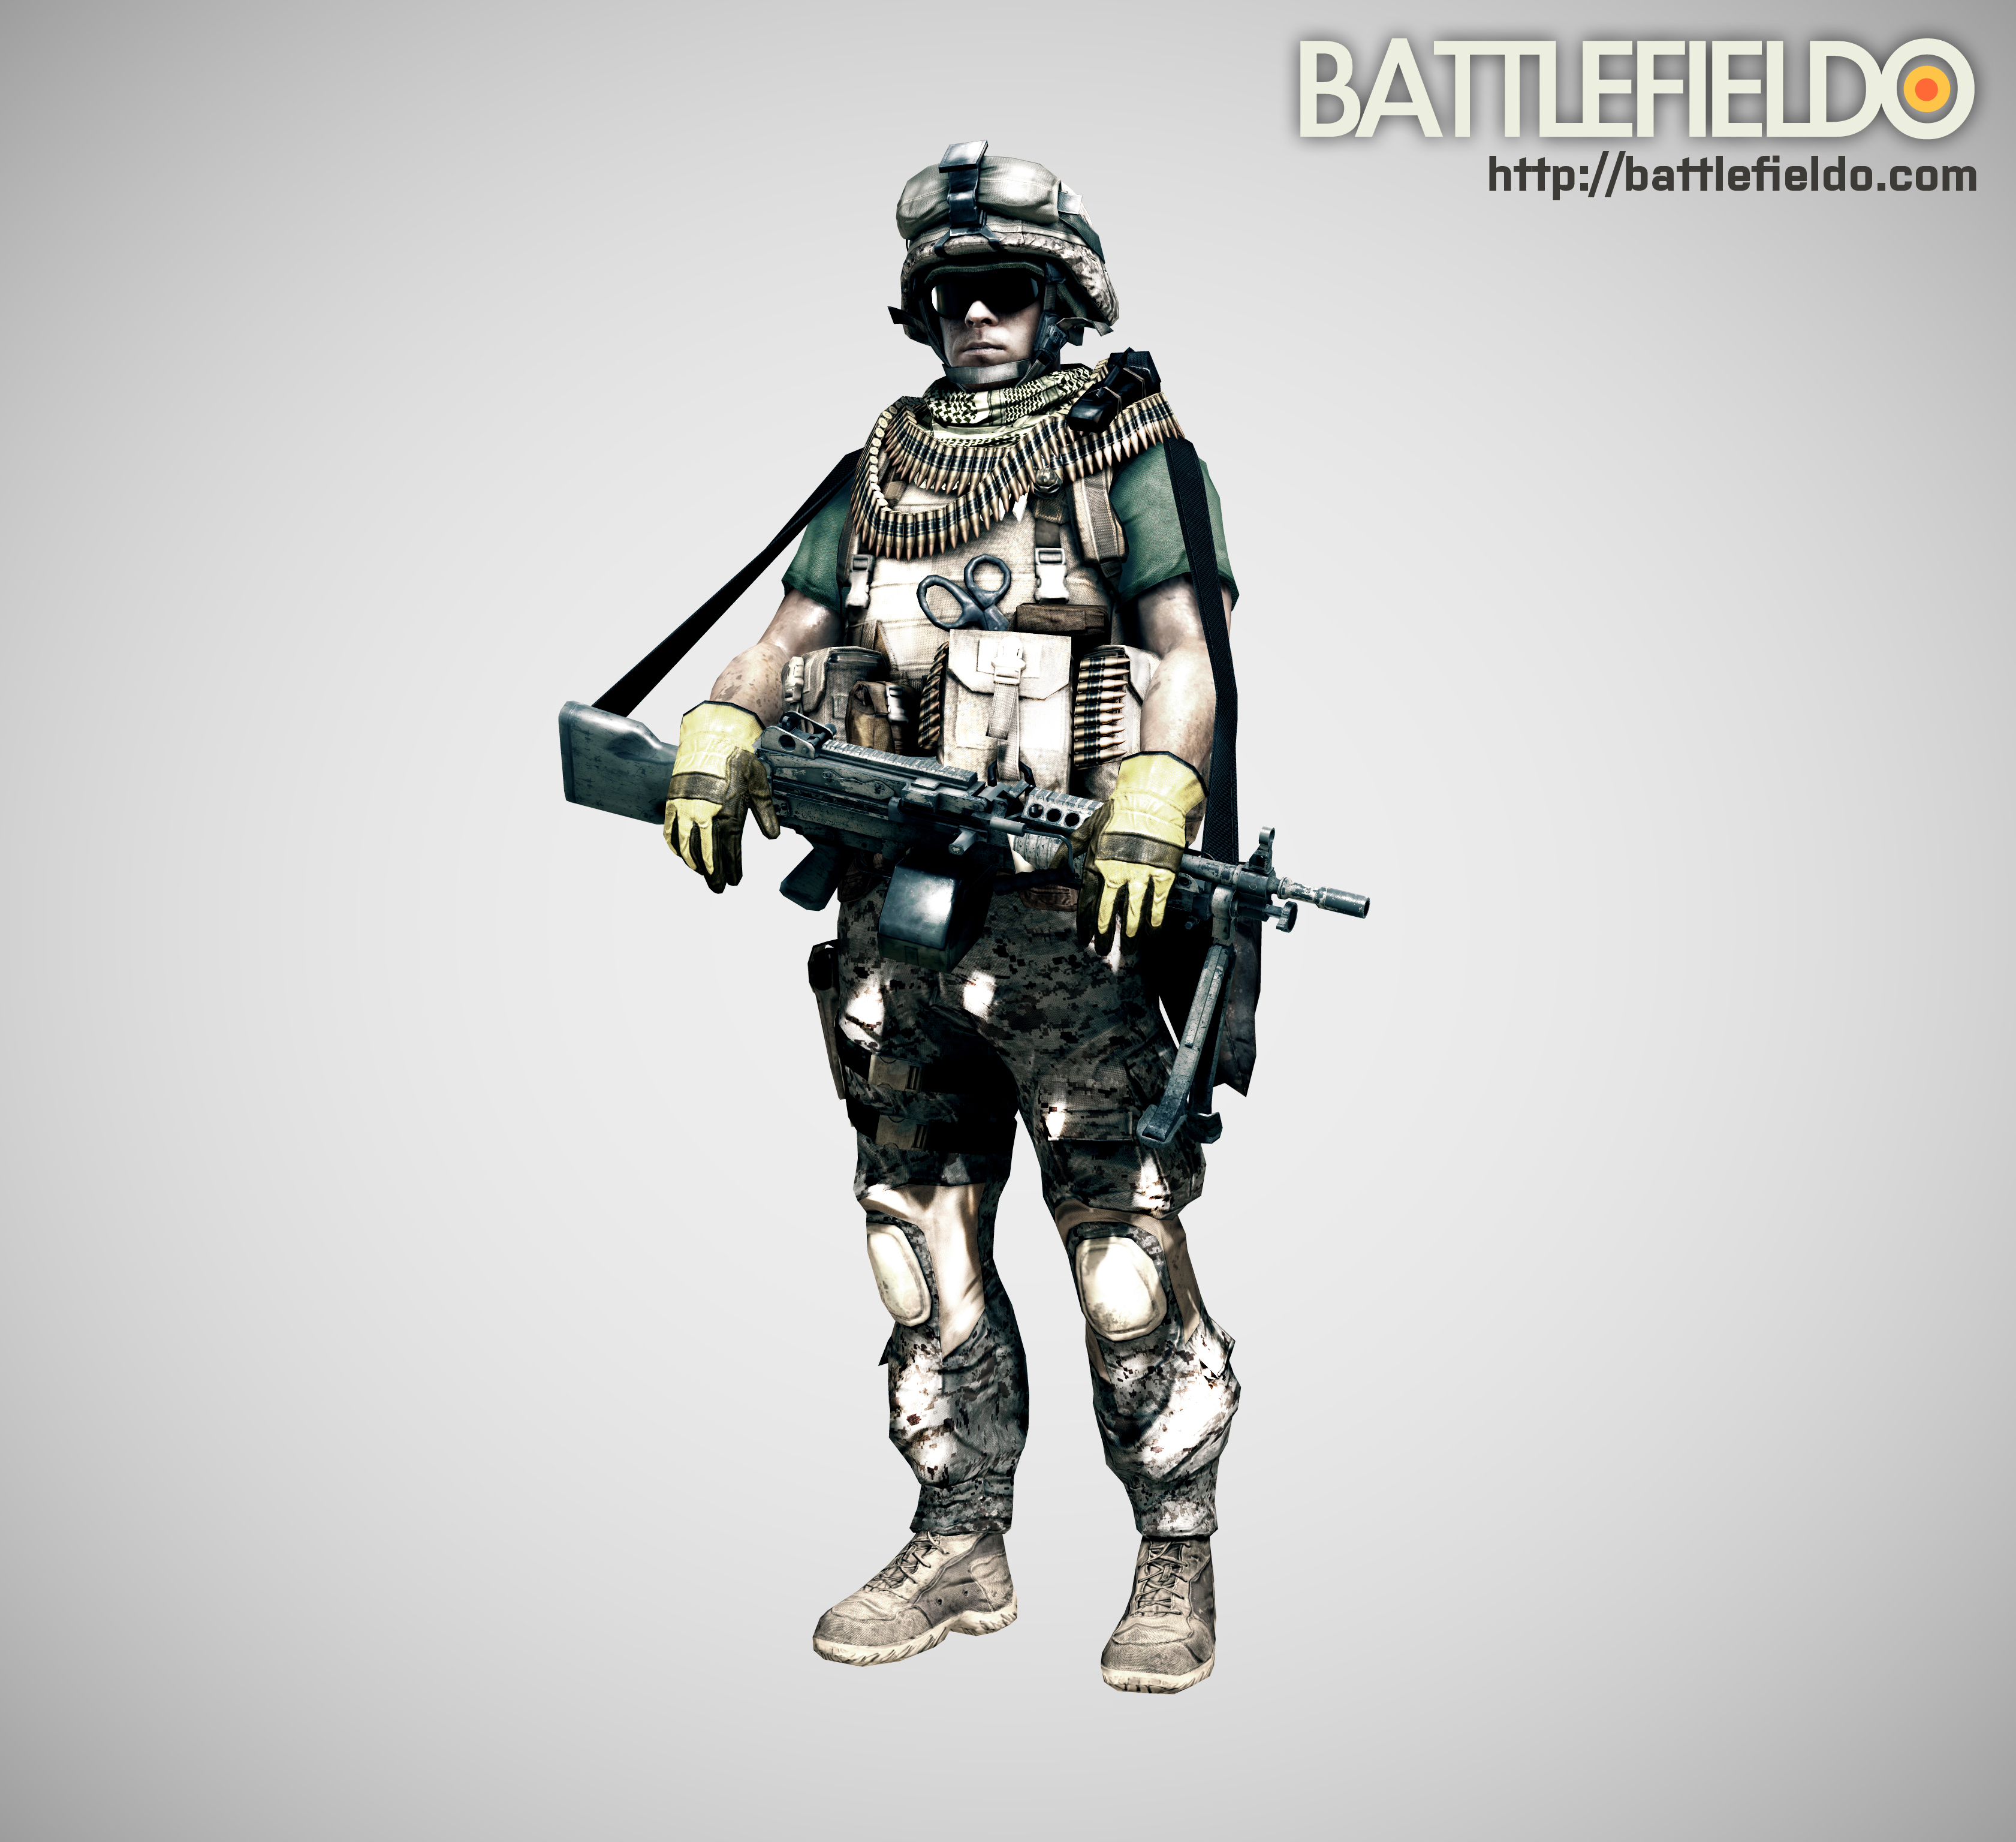 Battlefield 3 - Support